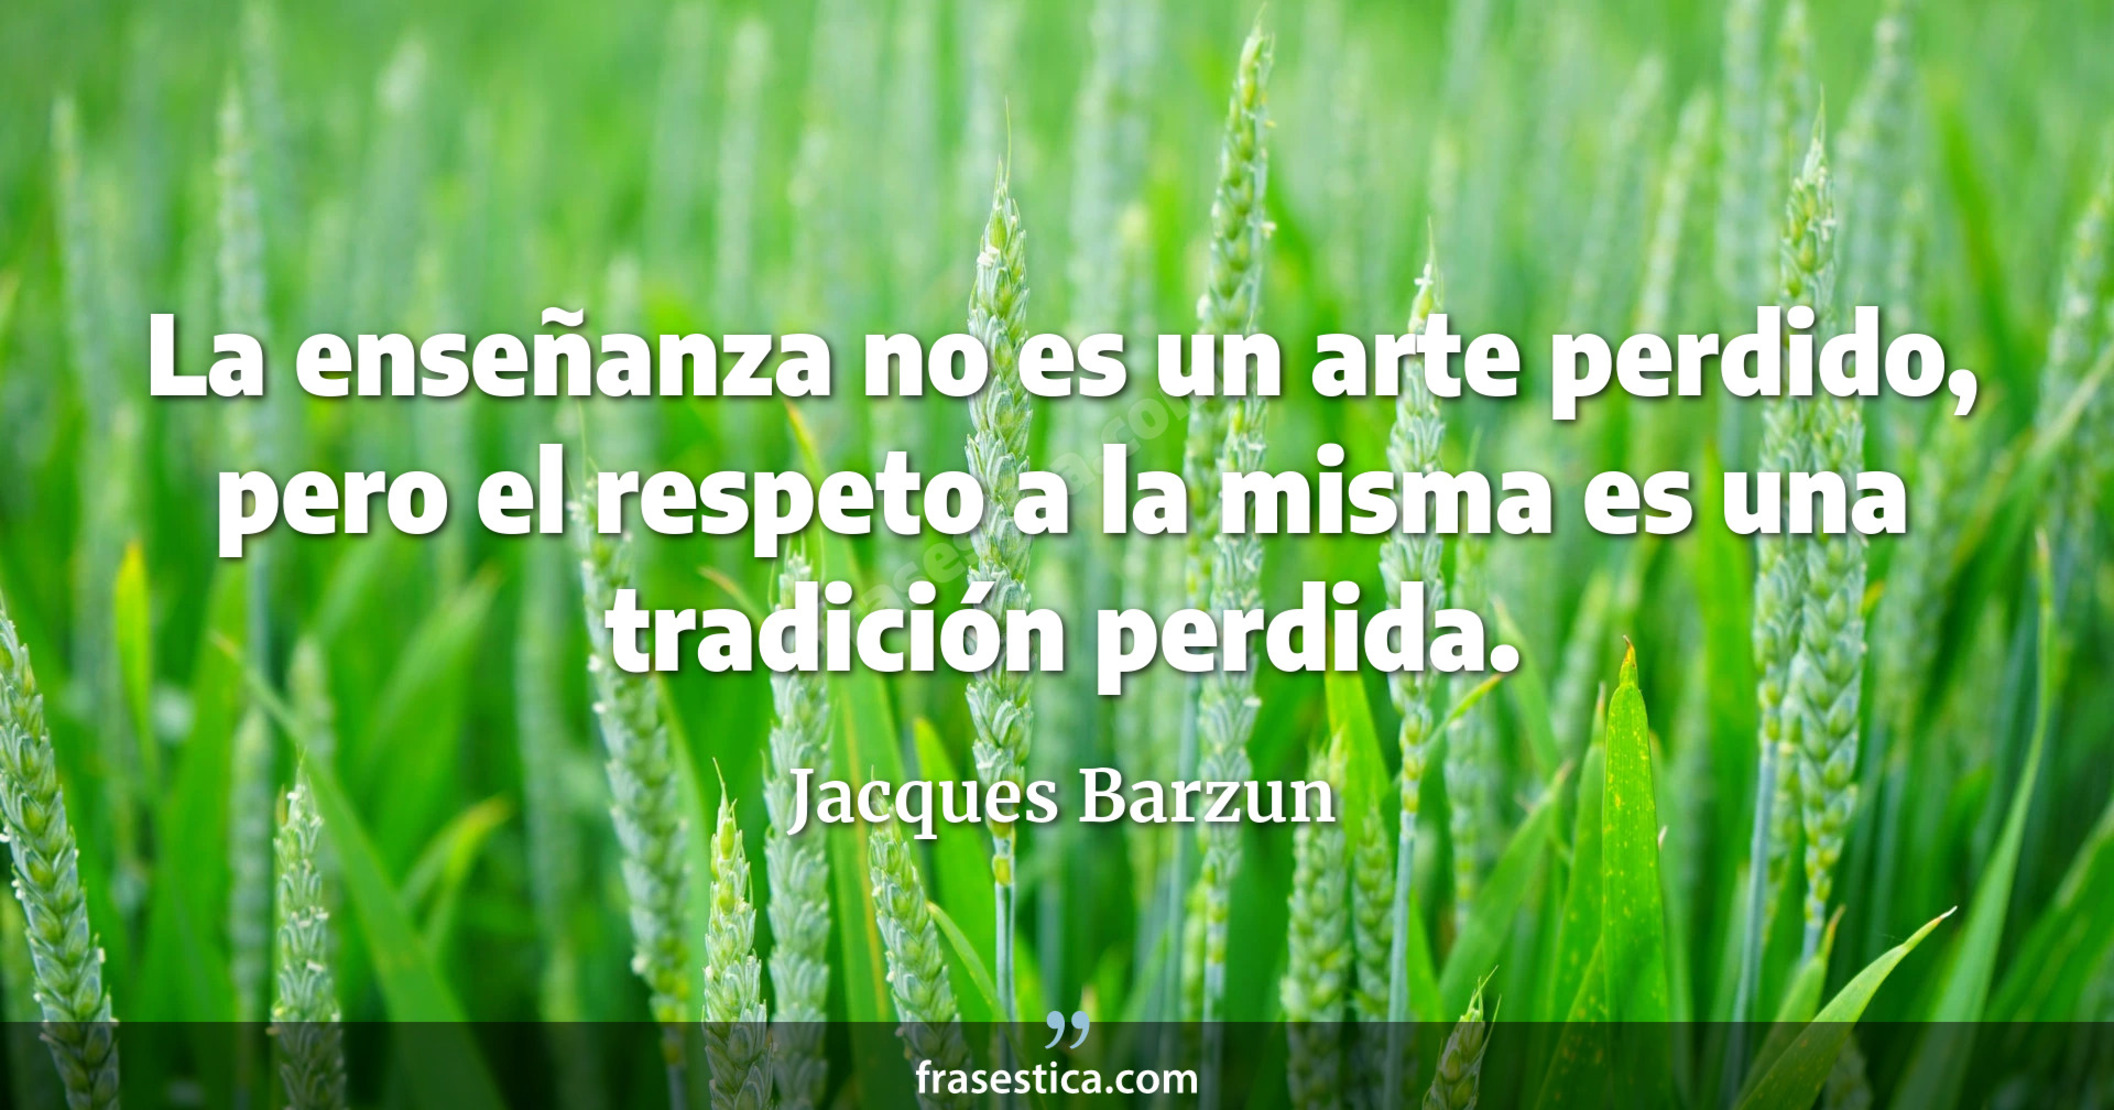 La enseñanza no es un arte perdido, pero el respeto a la misma es una tradición perdida. - Jacques Barzun